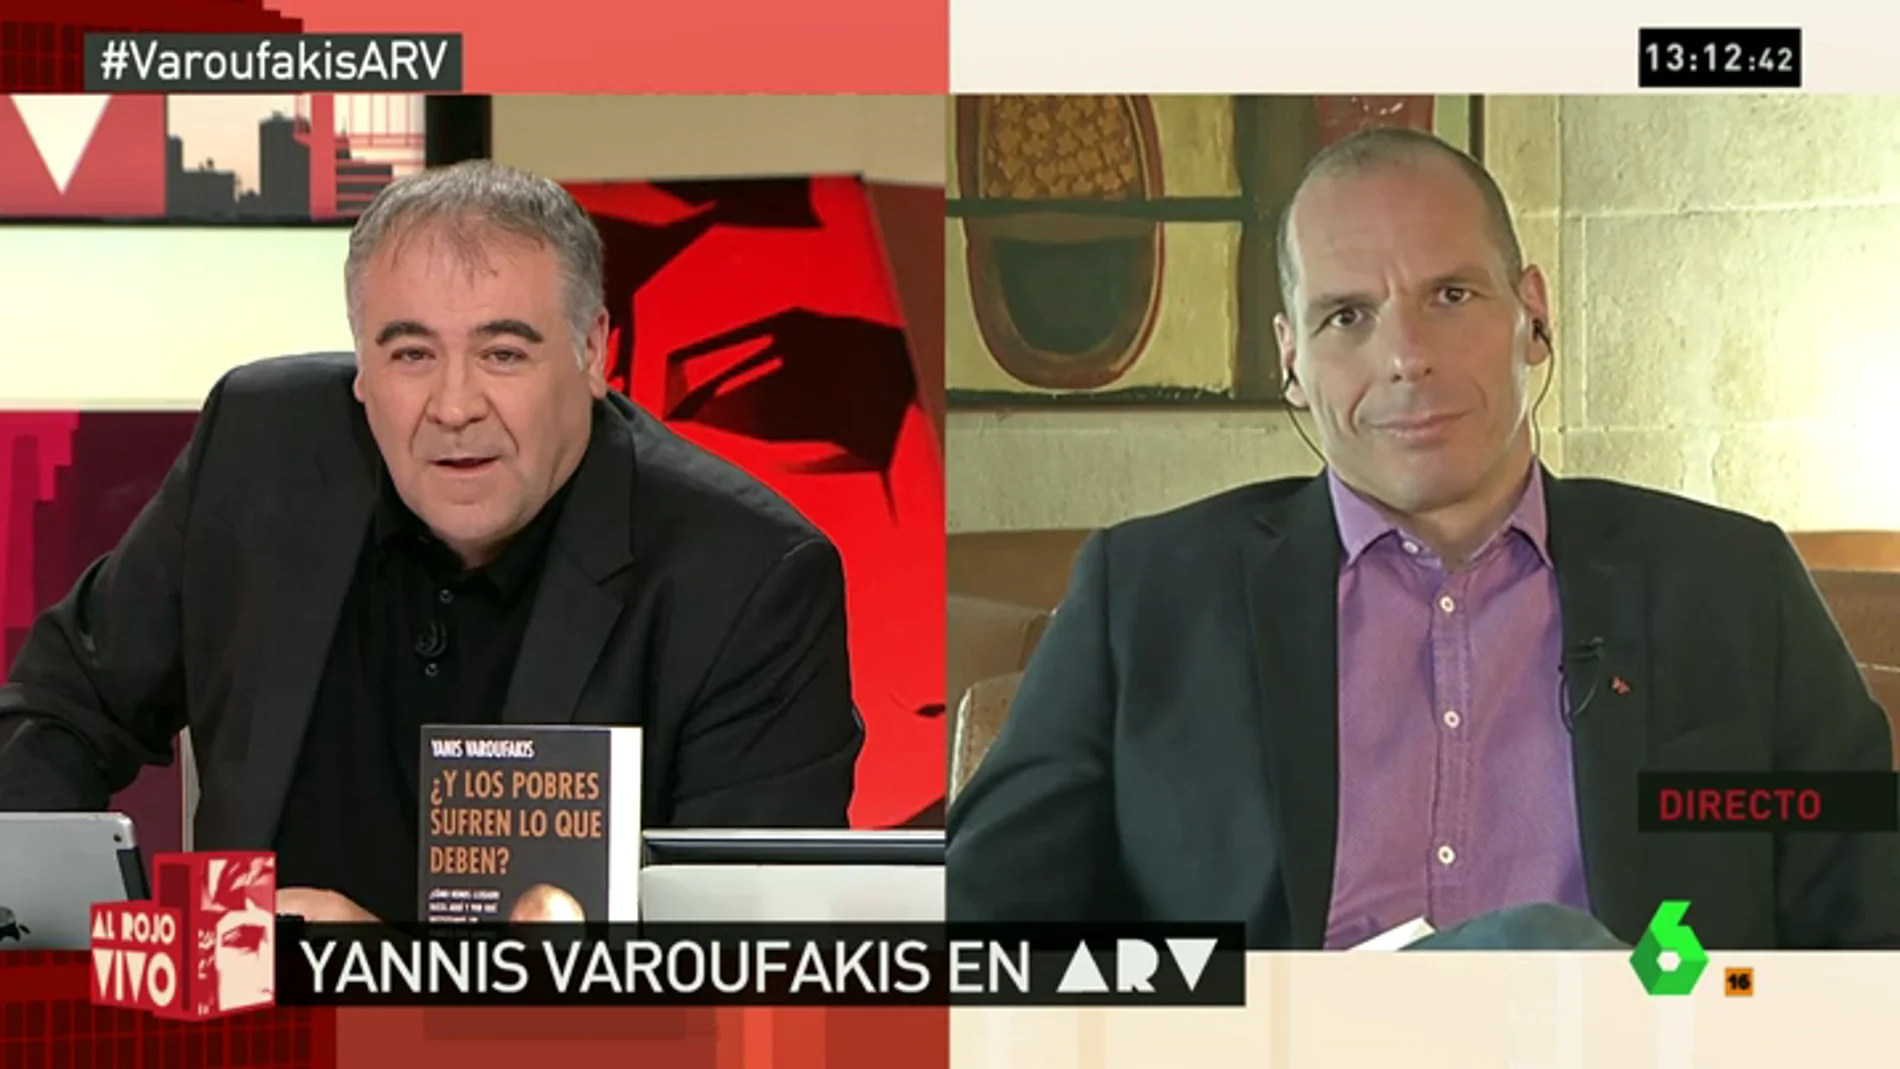 Varoufakis ARV